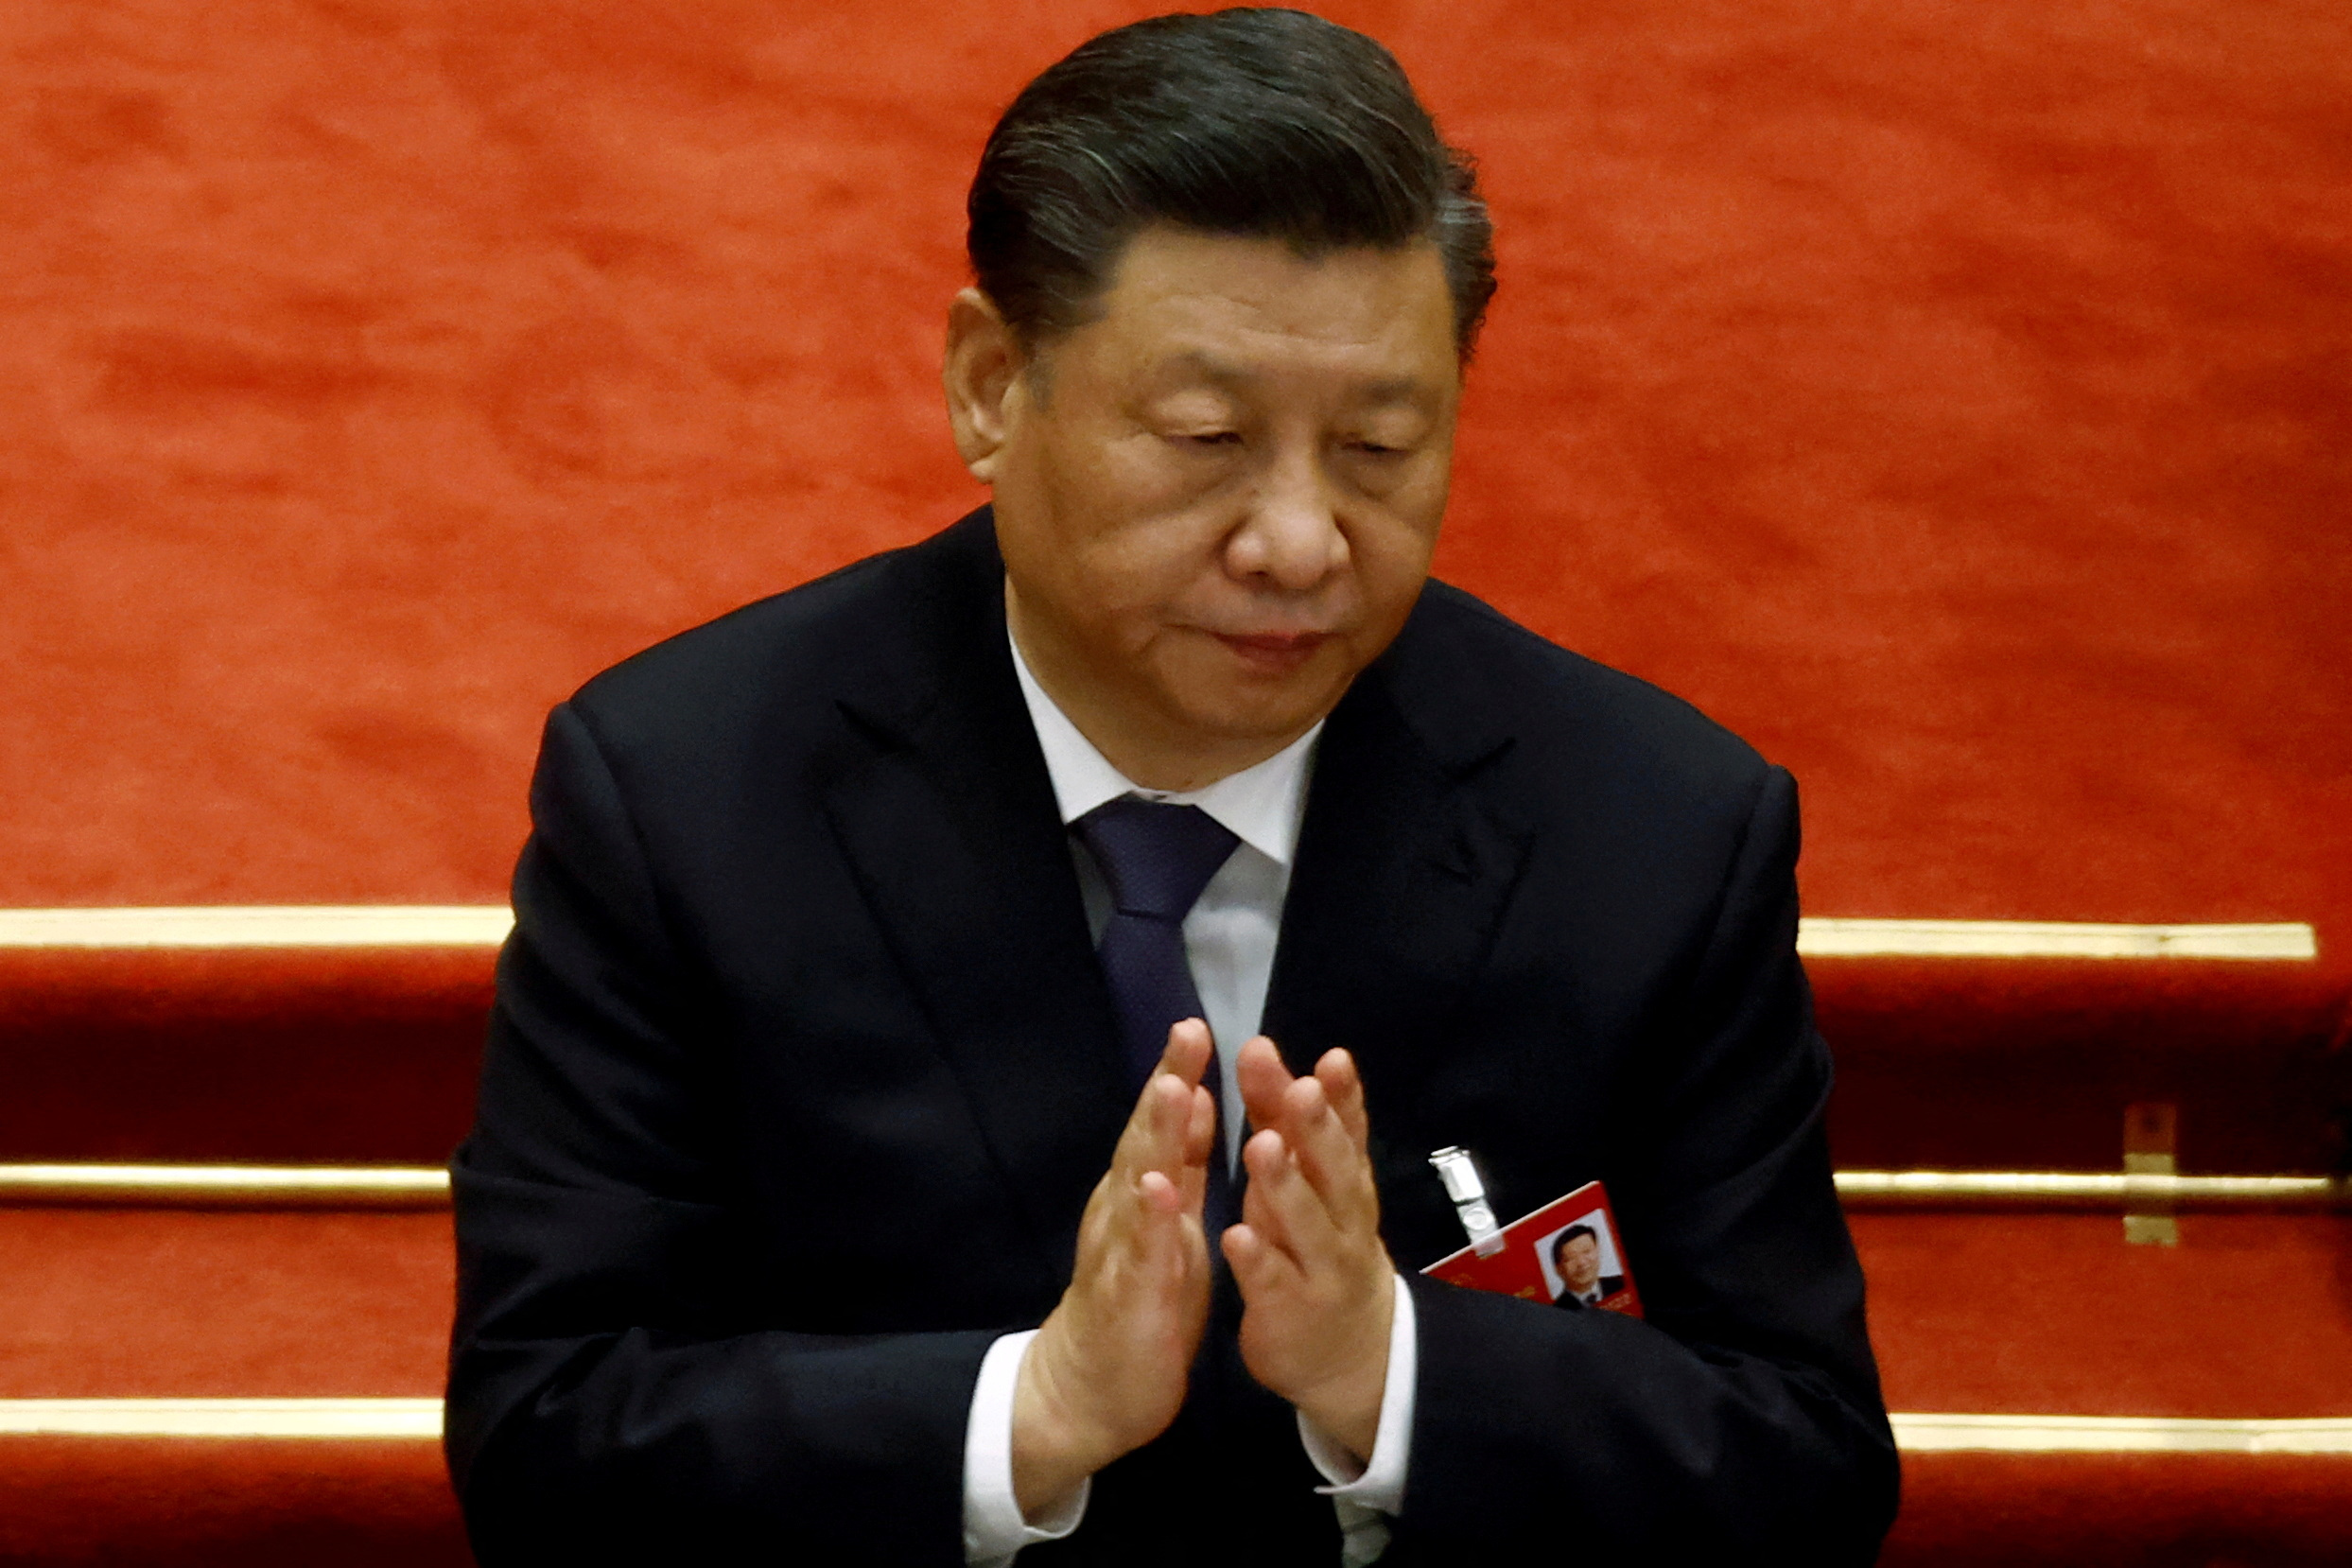 El régimen chino busca aumentar su influencia en la región del Indopacífico (REUTERS/Carlos Garcia Rawlins)